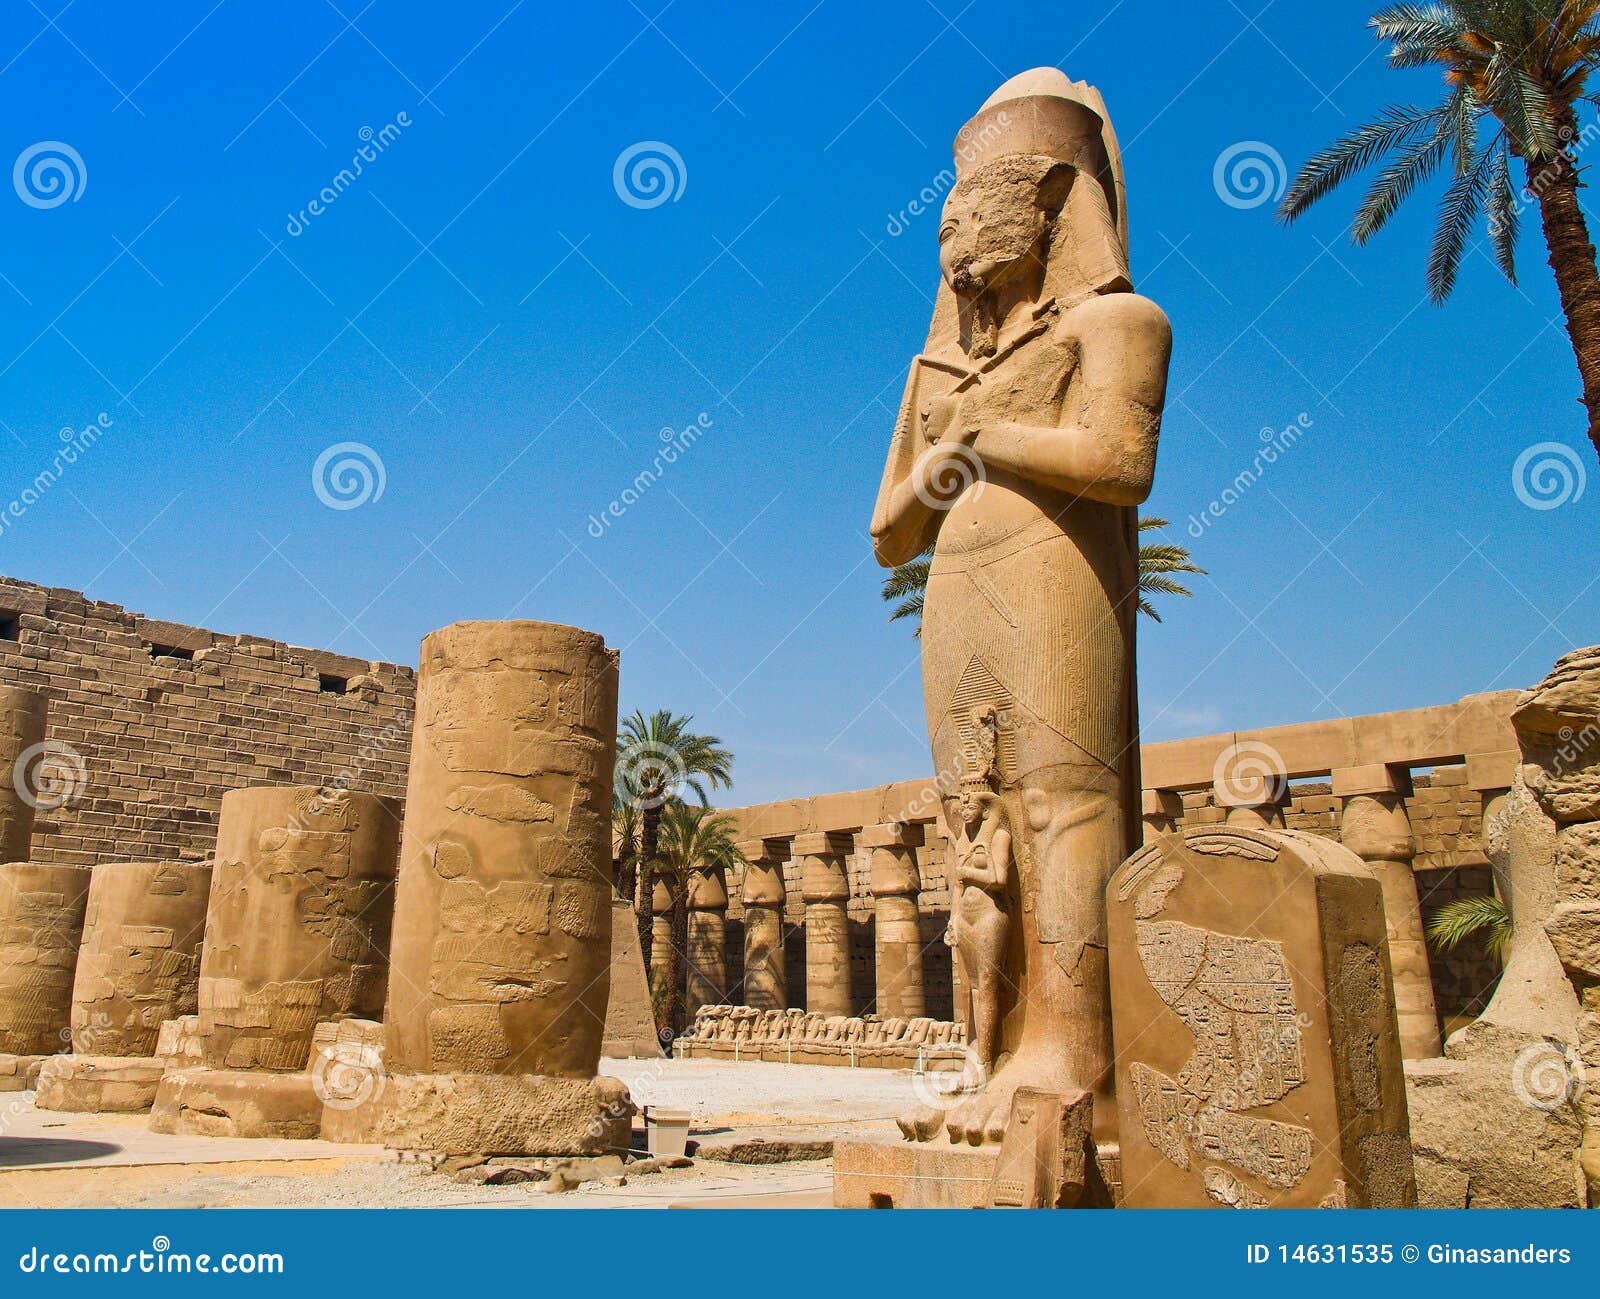 egypt, luxor, karnak temple